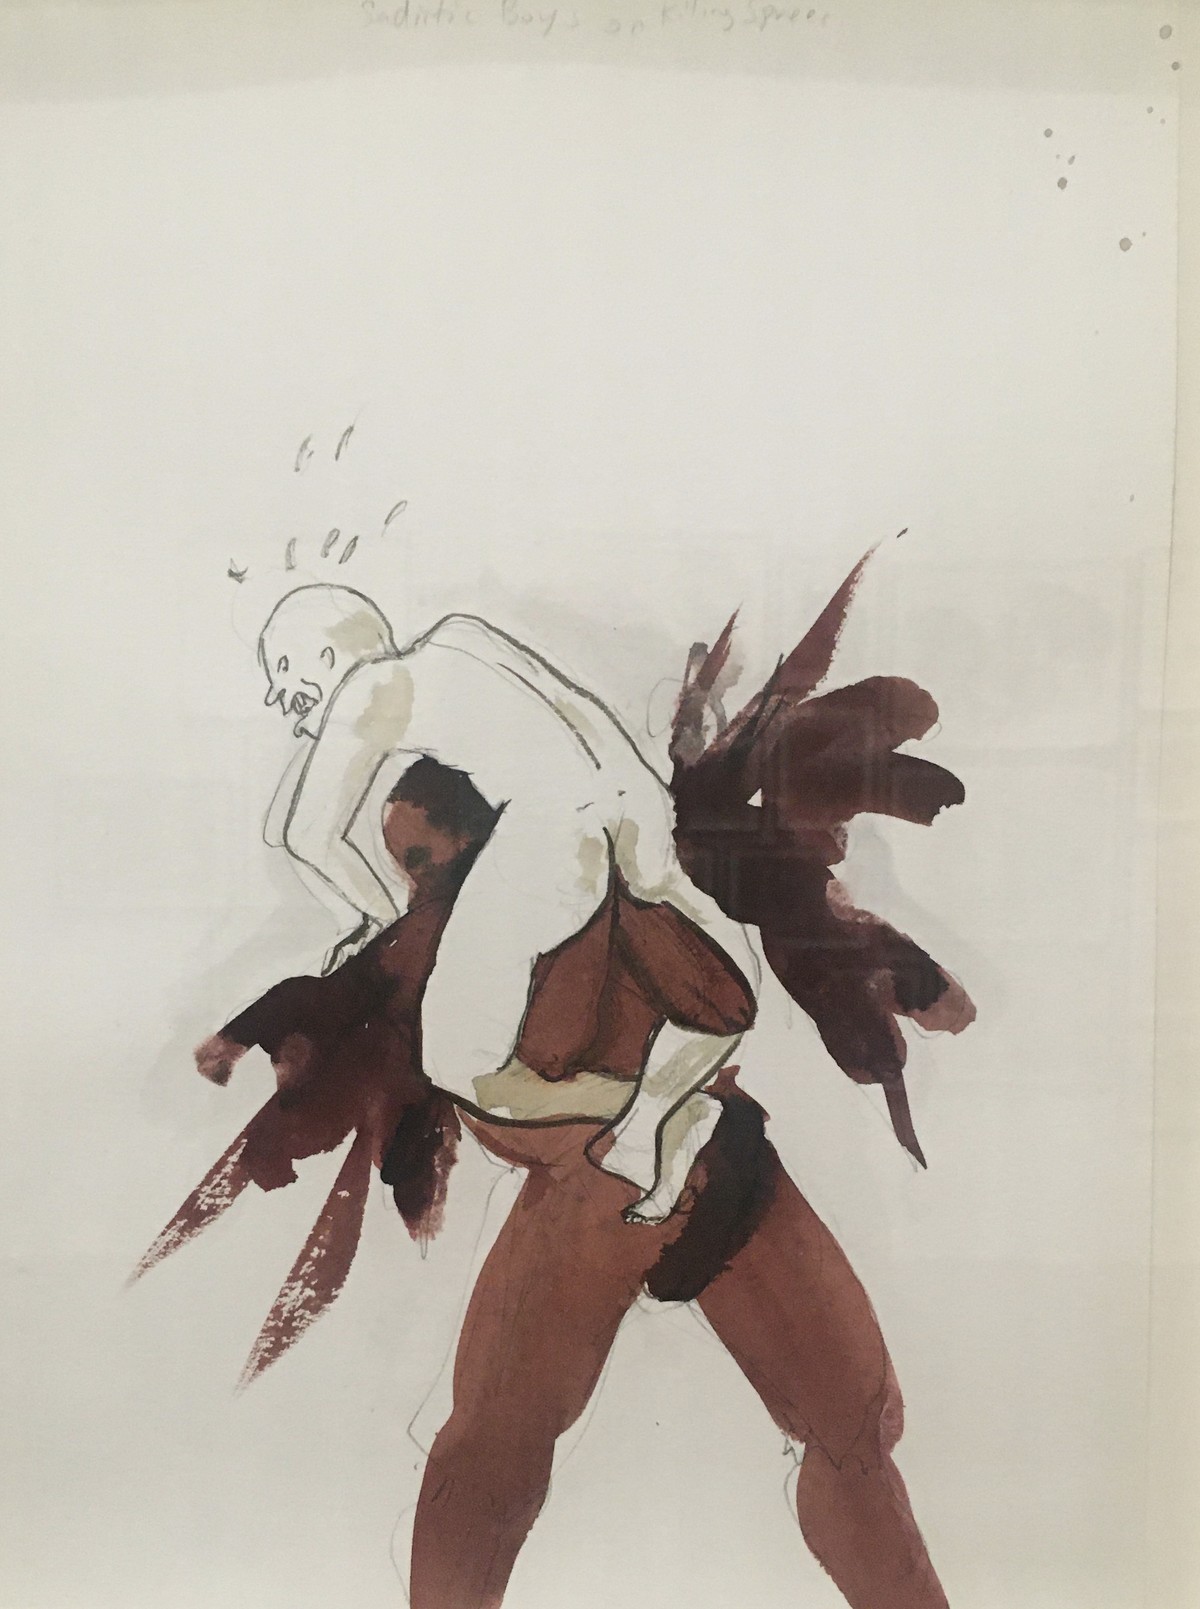 Kara Walker: Untitled. 2013. Wasserfarbe und Graphit auf Papier. 32 x 24 cm. Archive of the Artist. 